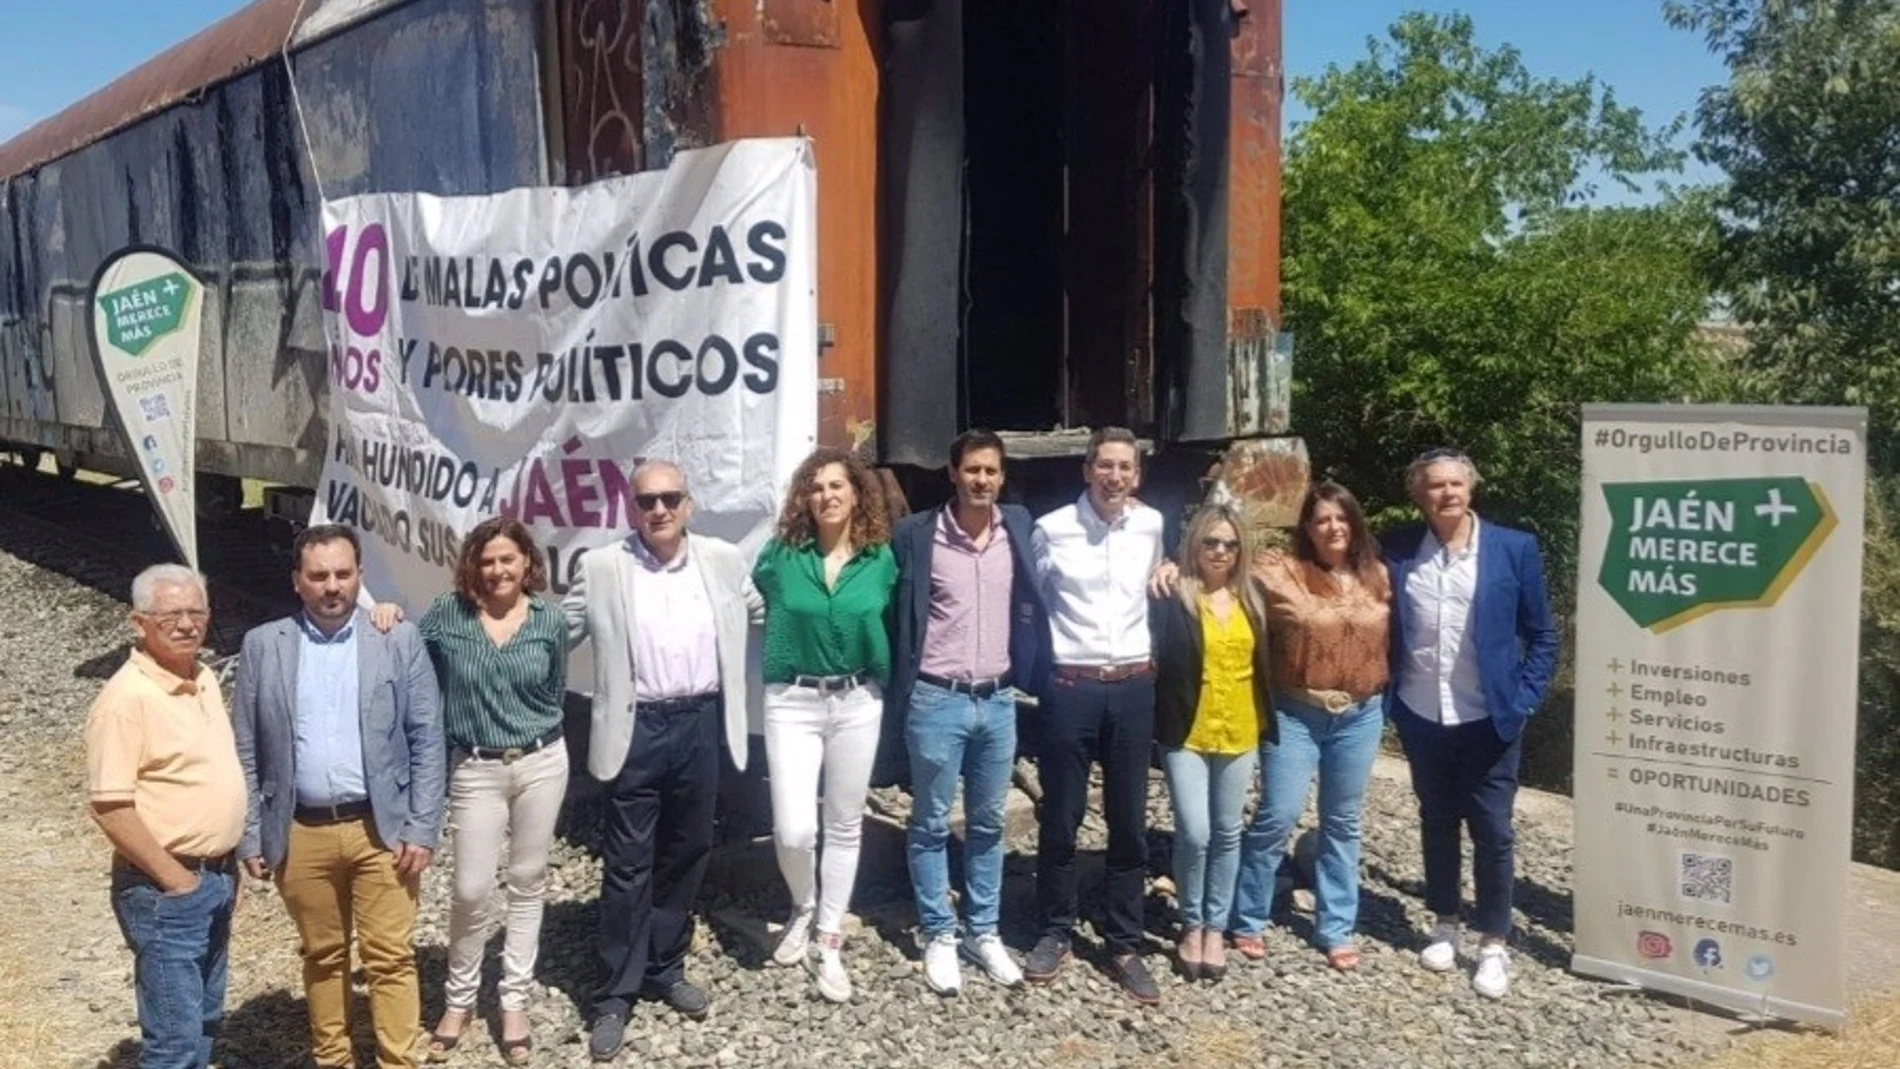 Candidatura de "Jaén merece más" frente a un tren abandonado